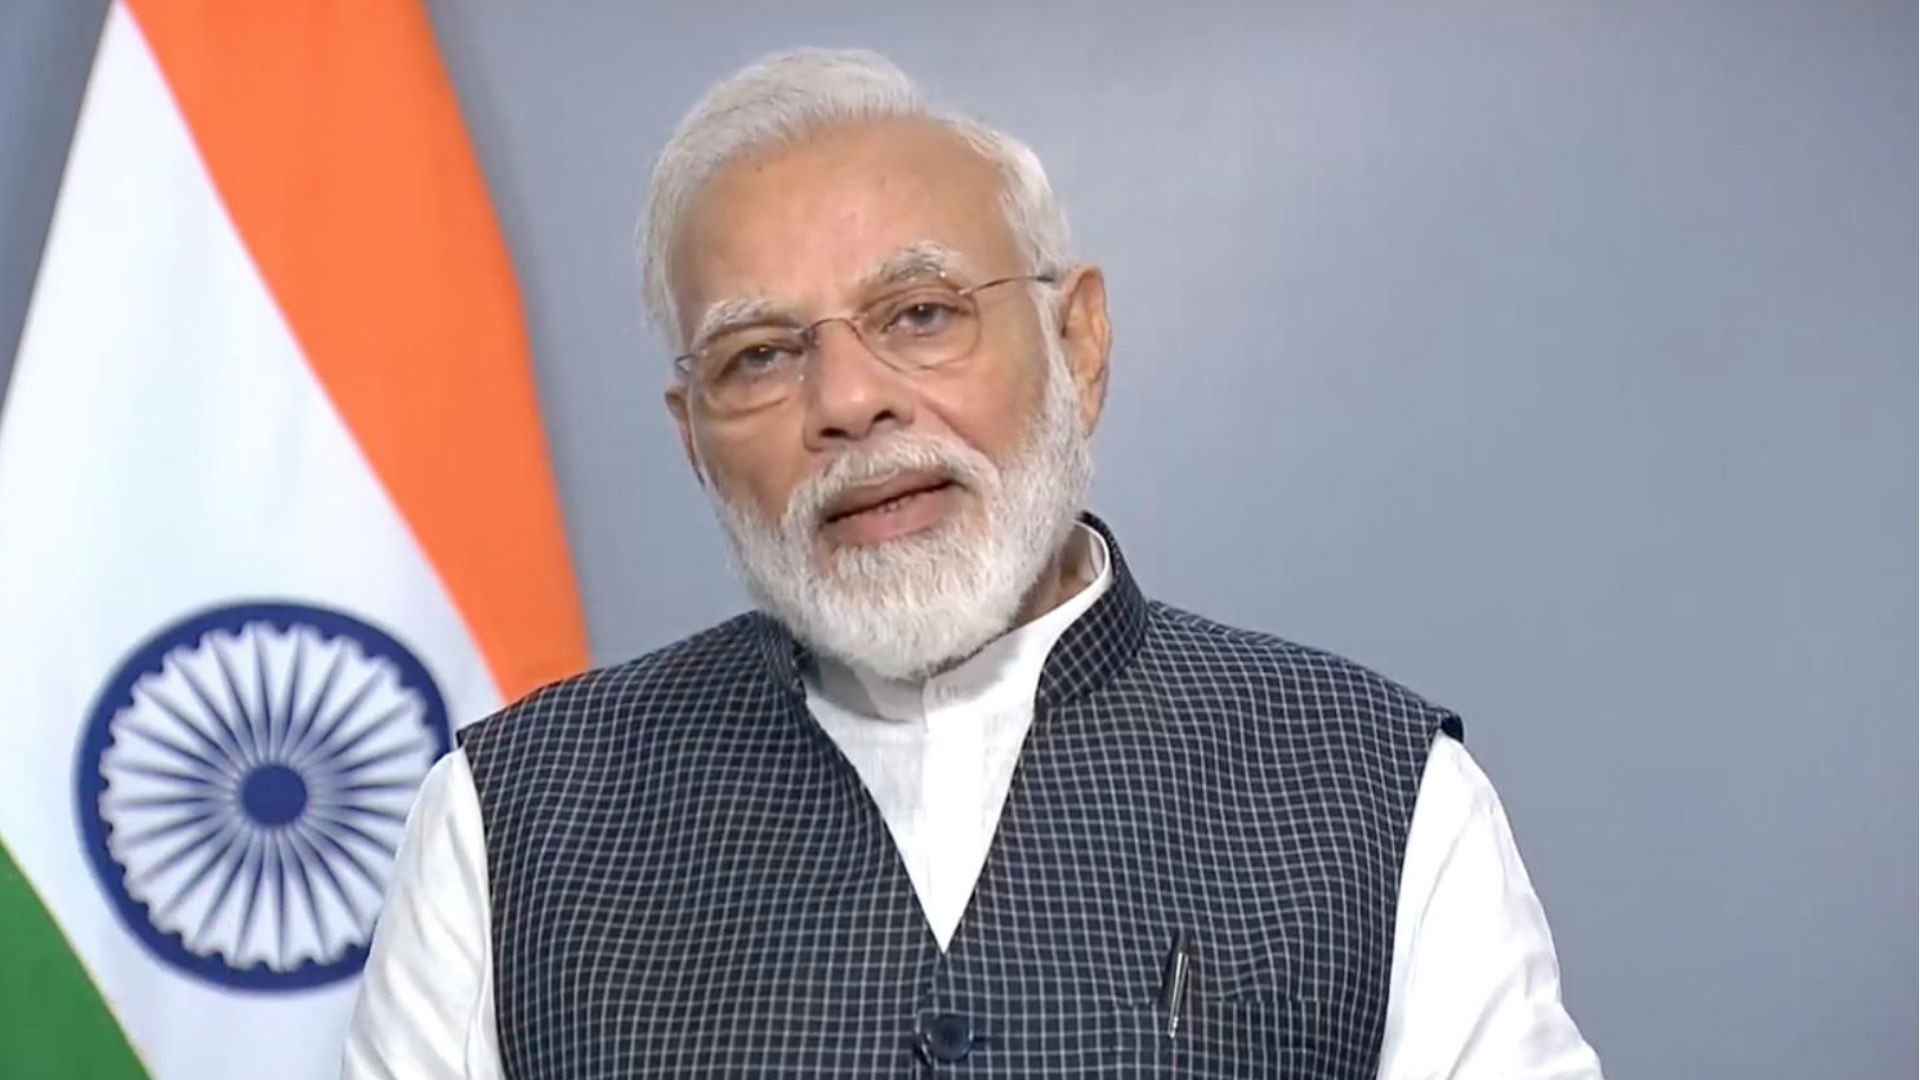 प्रधानमंत्री नरेंद्र मोदी का राष्ट्र के नाम संदेश- जम्मू कश्मीर और लद्दाख के लोगों को दी नई सुबह की बधाई